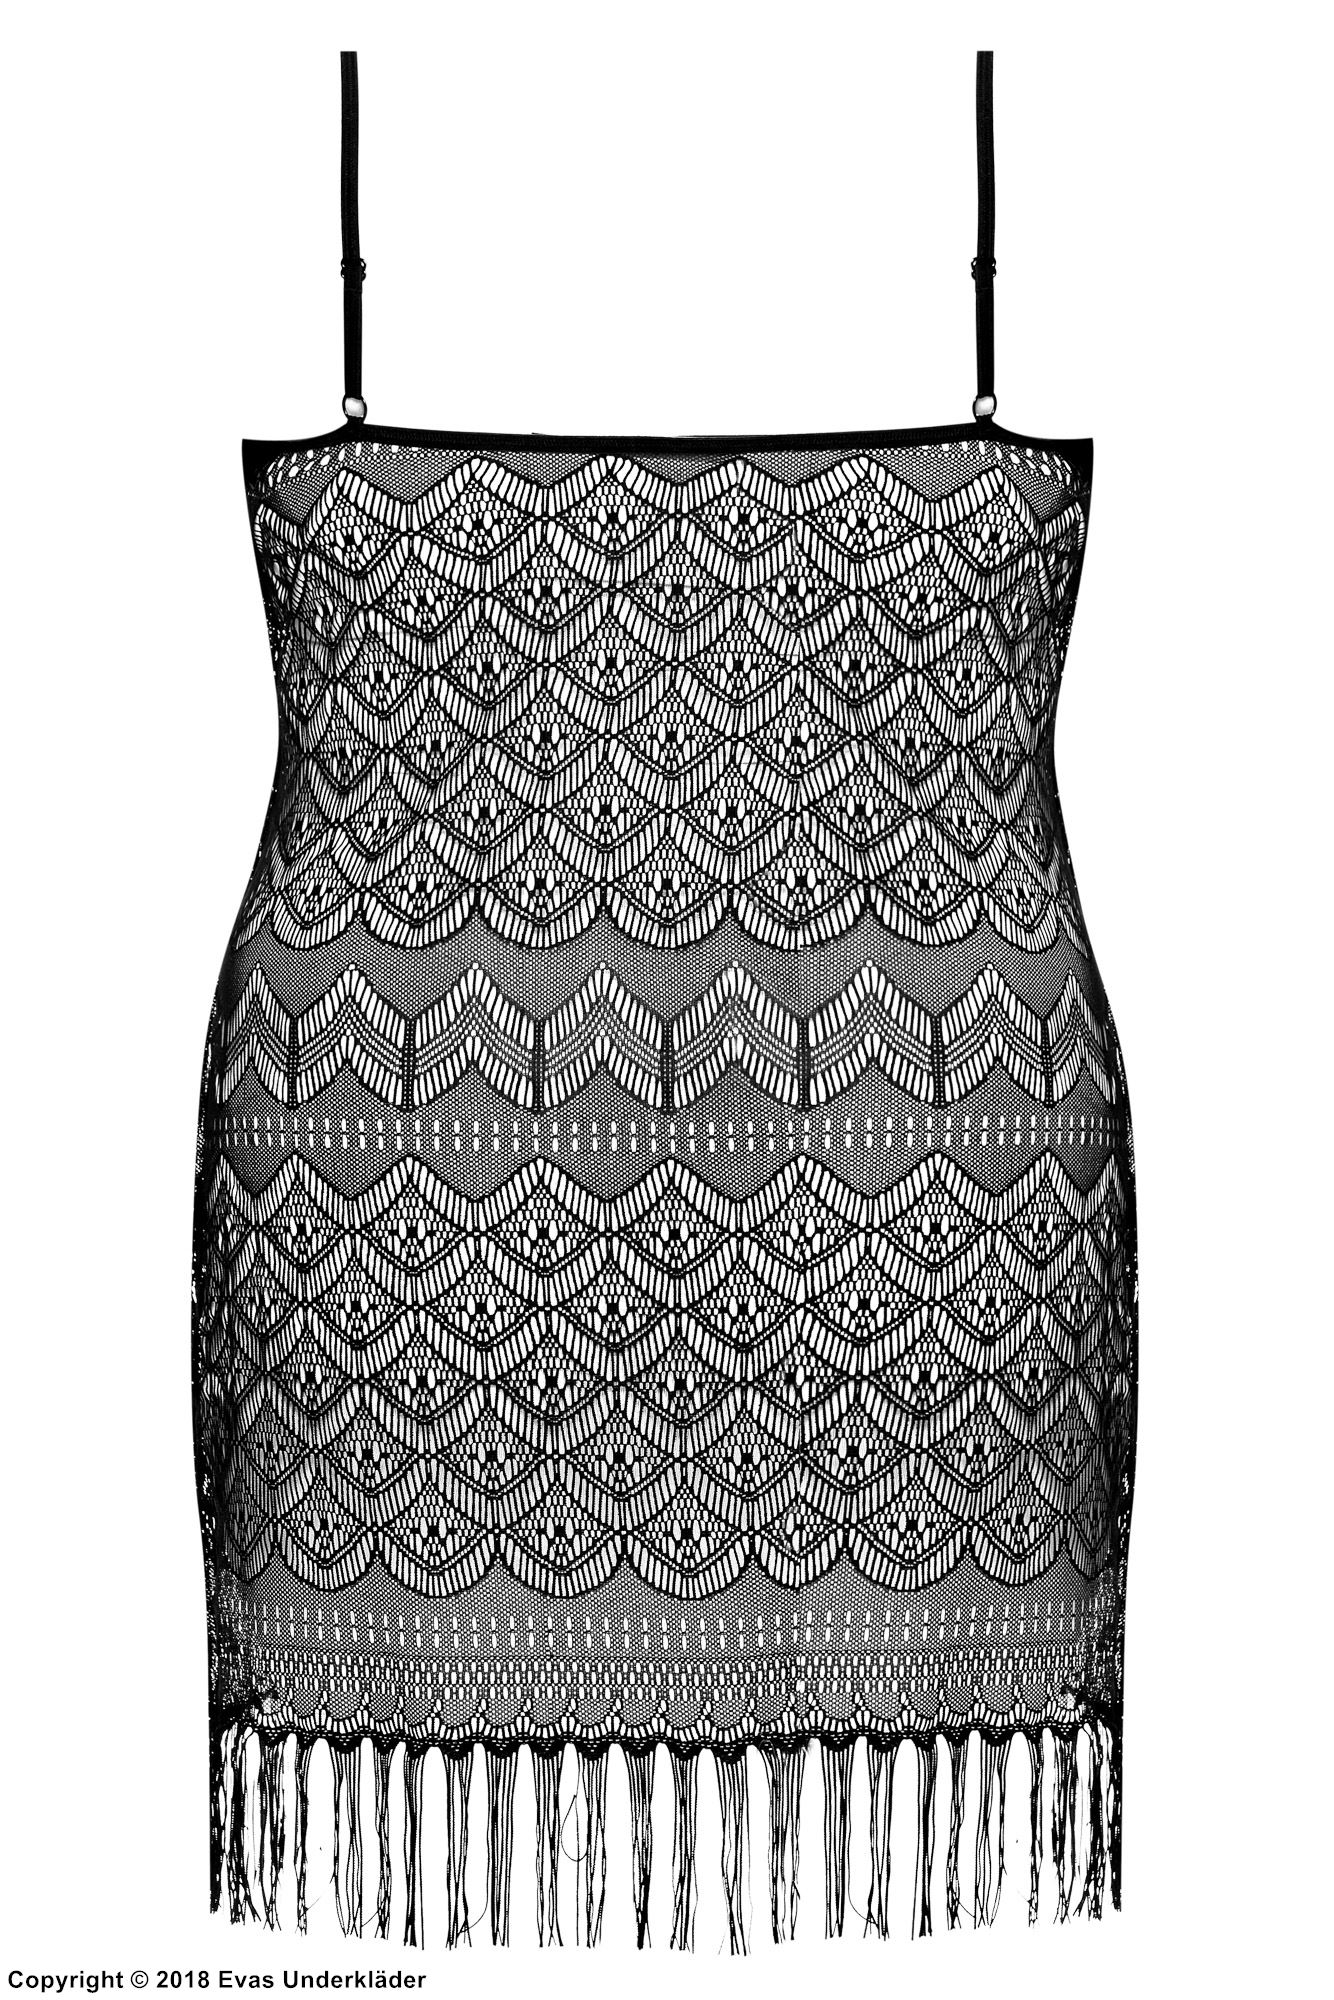 Durchsichtiges Kleid, Spitze, Fransen, detailliertes Muster, XL bis 6XL